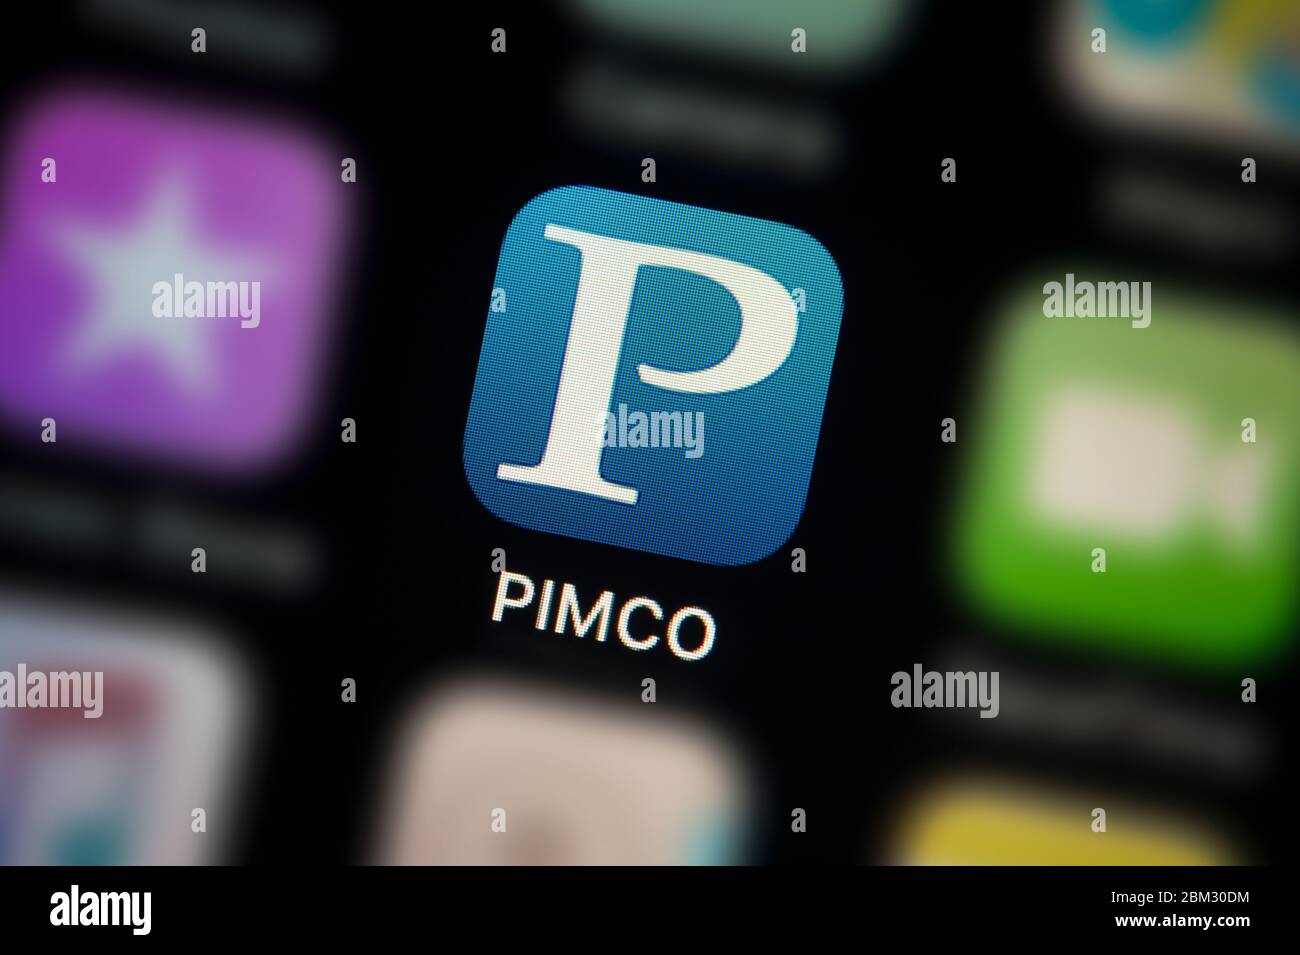 Gros plan de l'icône de l'application PIMCO, comme illustré sur l'écran d'un smartphone (usage éditorial uniquement) Banque D'Images